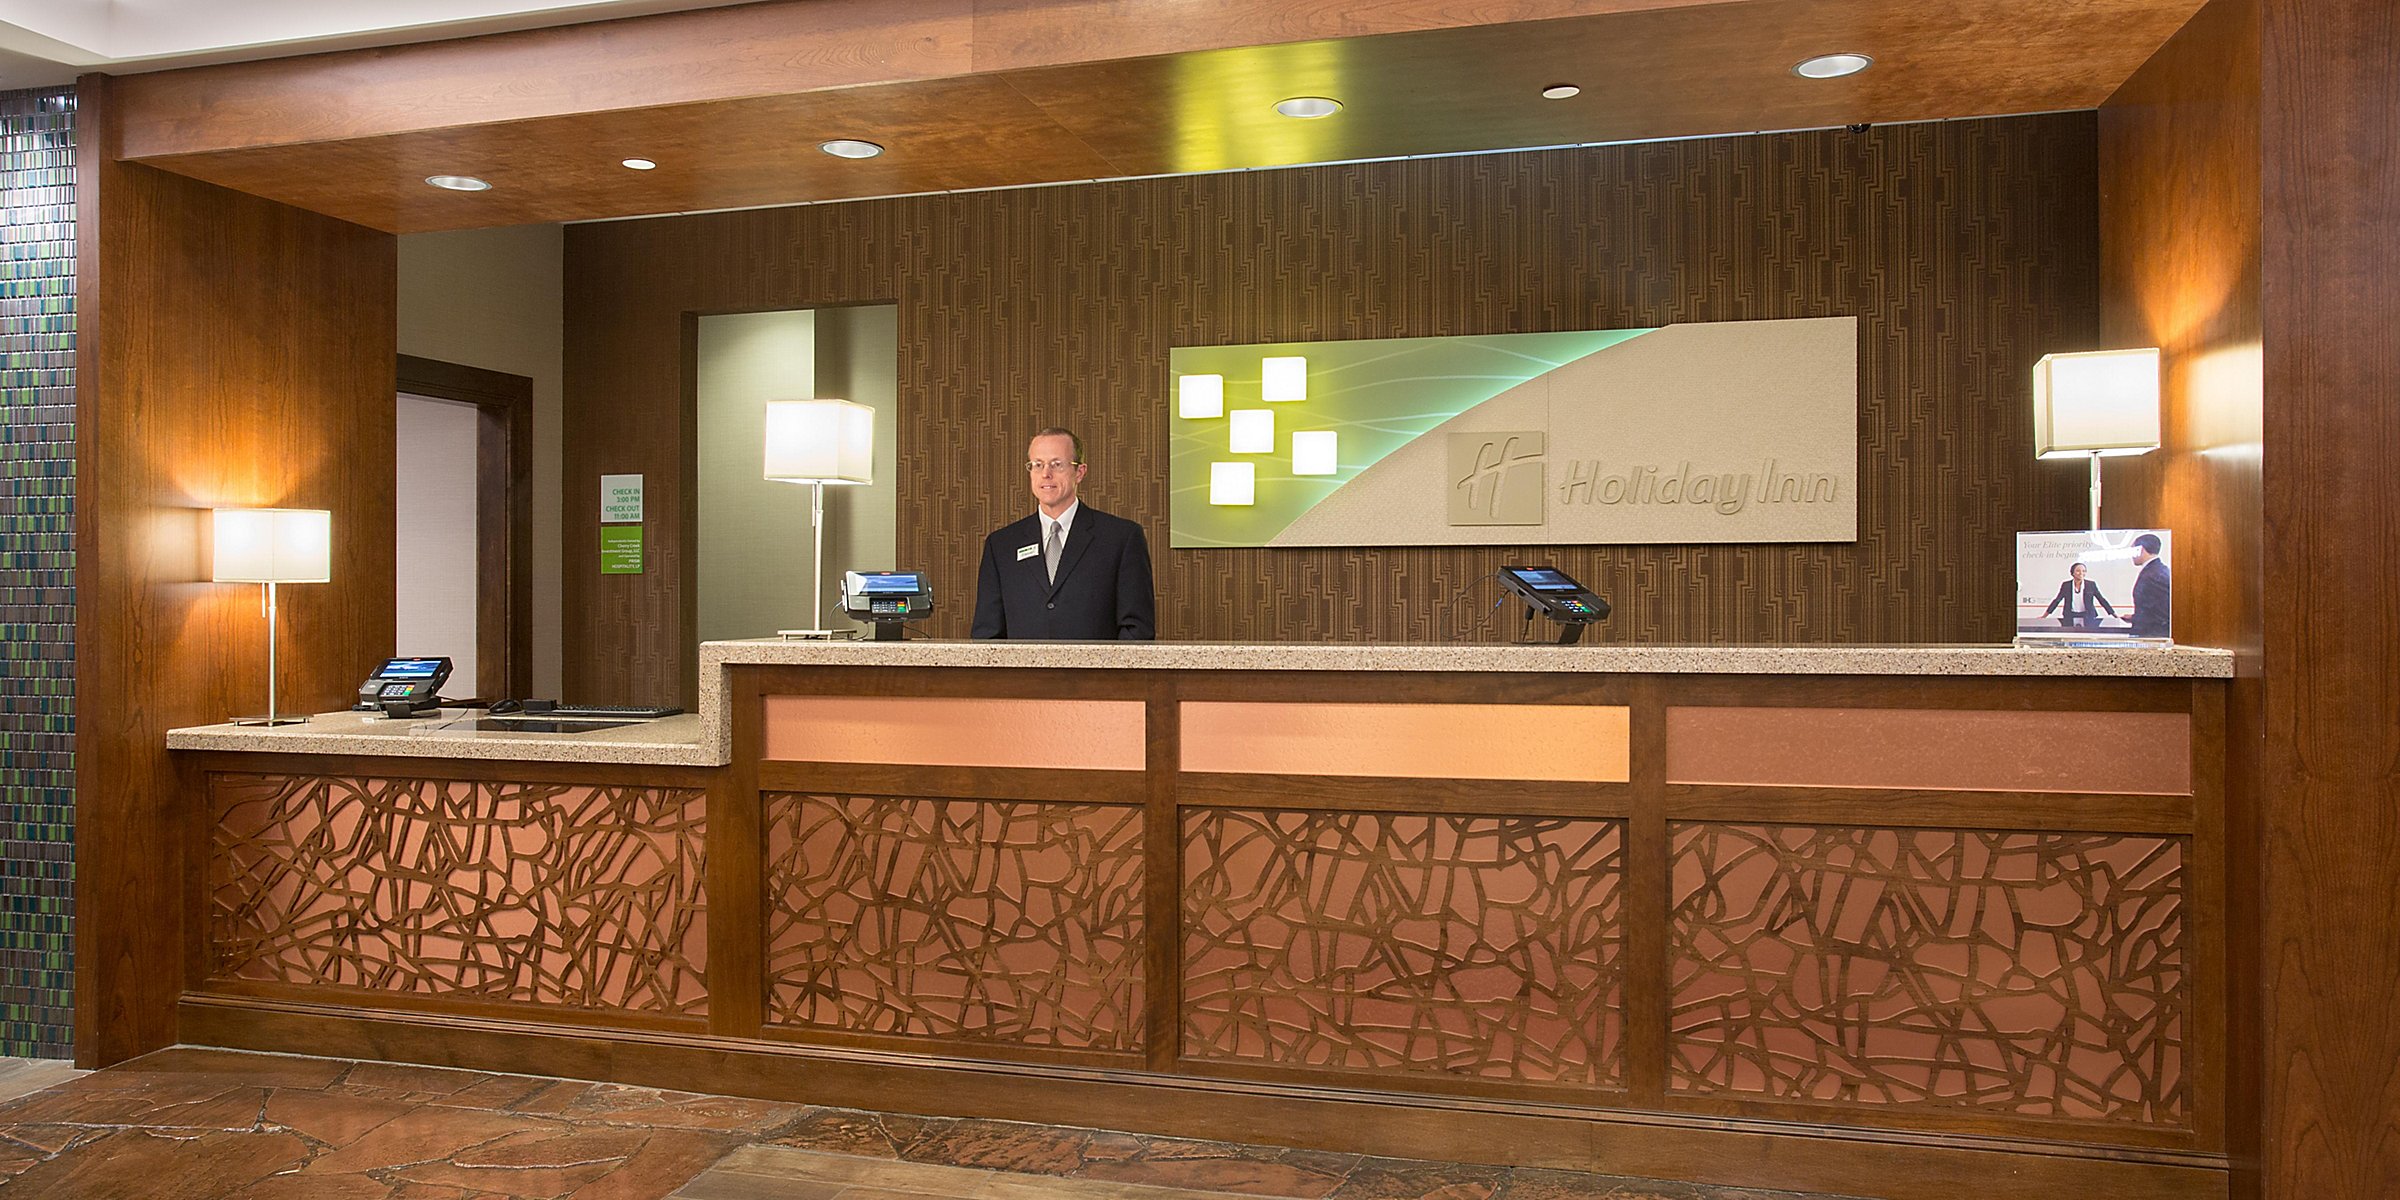 Hotels Near University Of Colorado Denver Holiday Inn